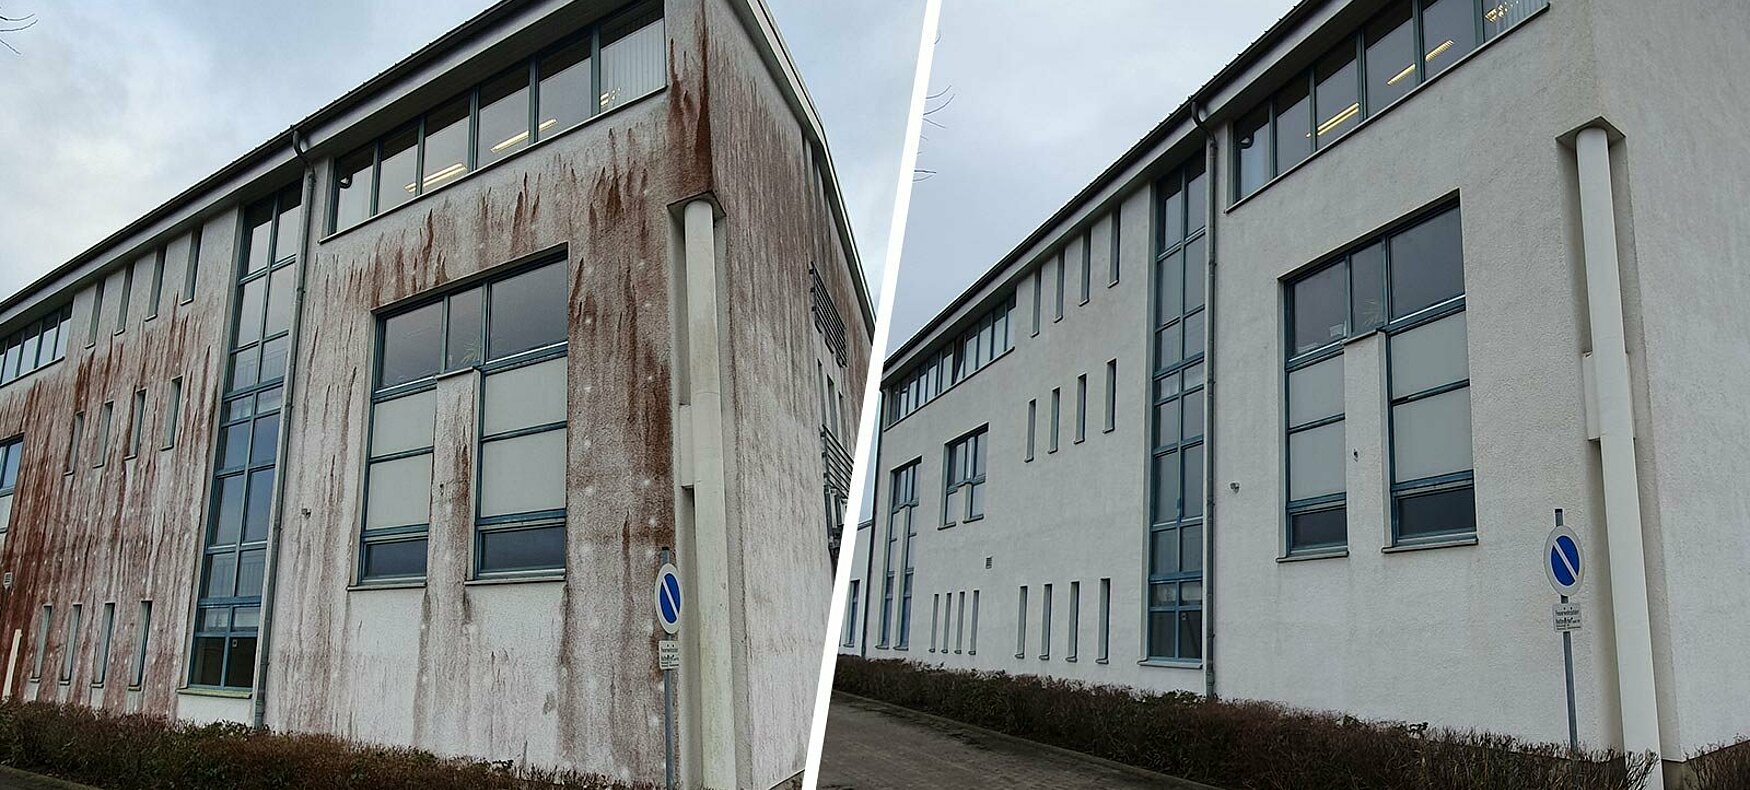 Fassadenreinigung Rostock: Jetzt Angebot einholen und Hauswand reinigen lassen.